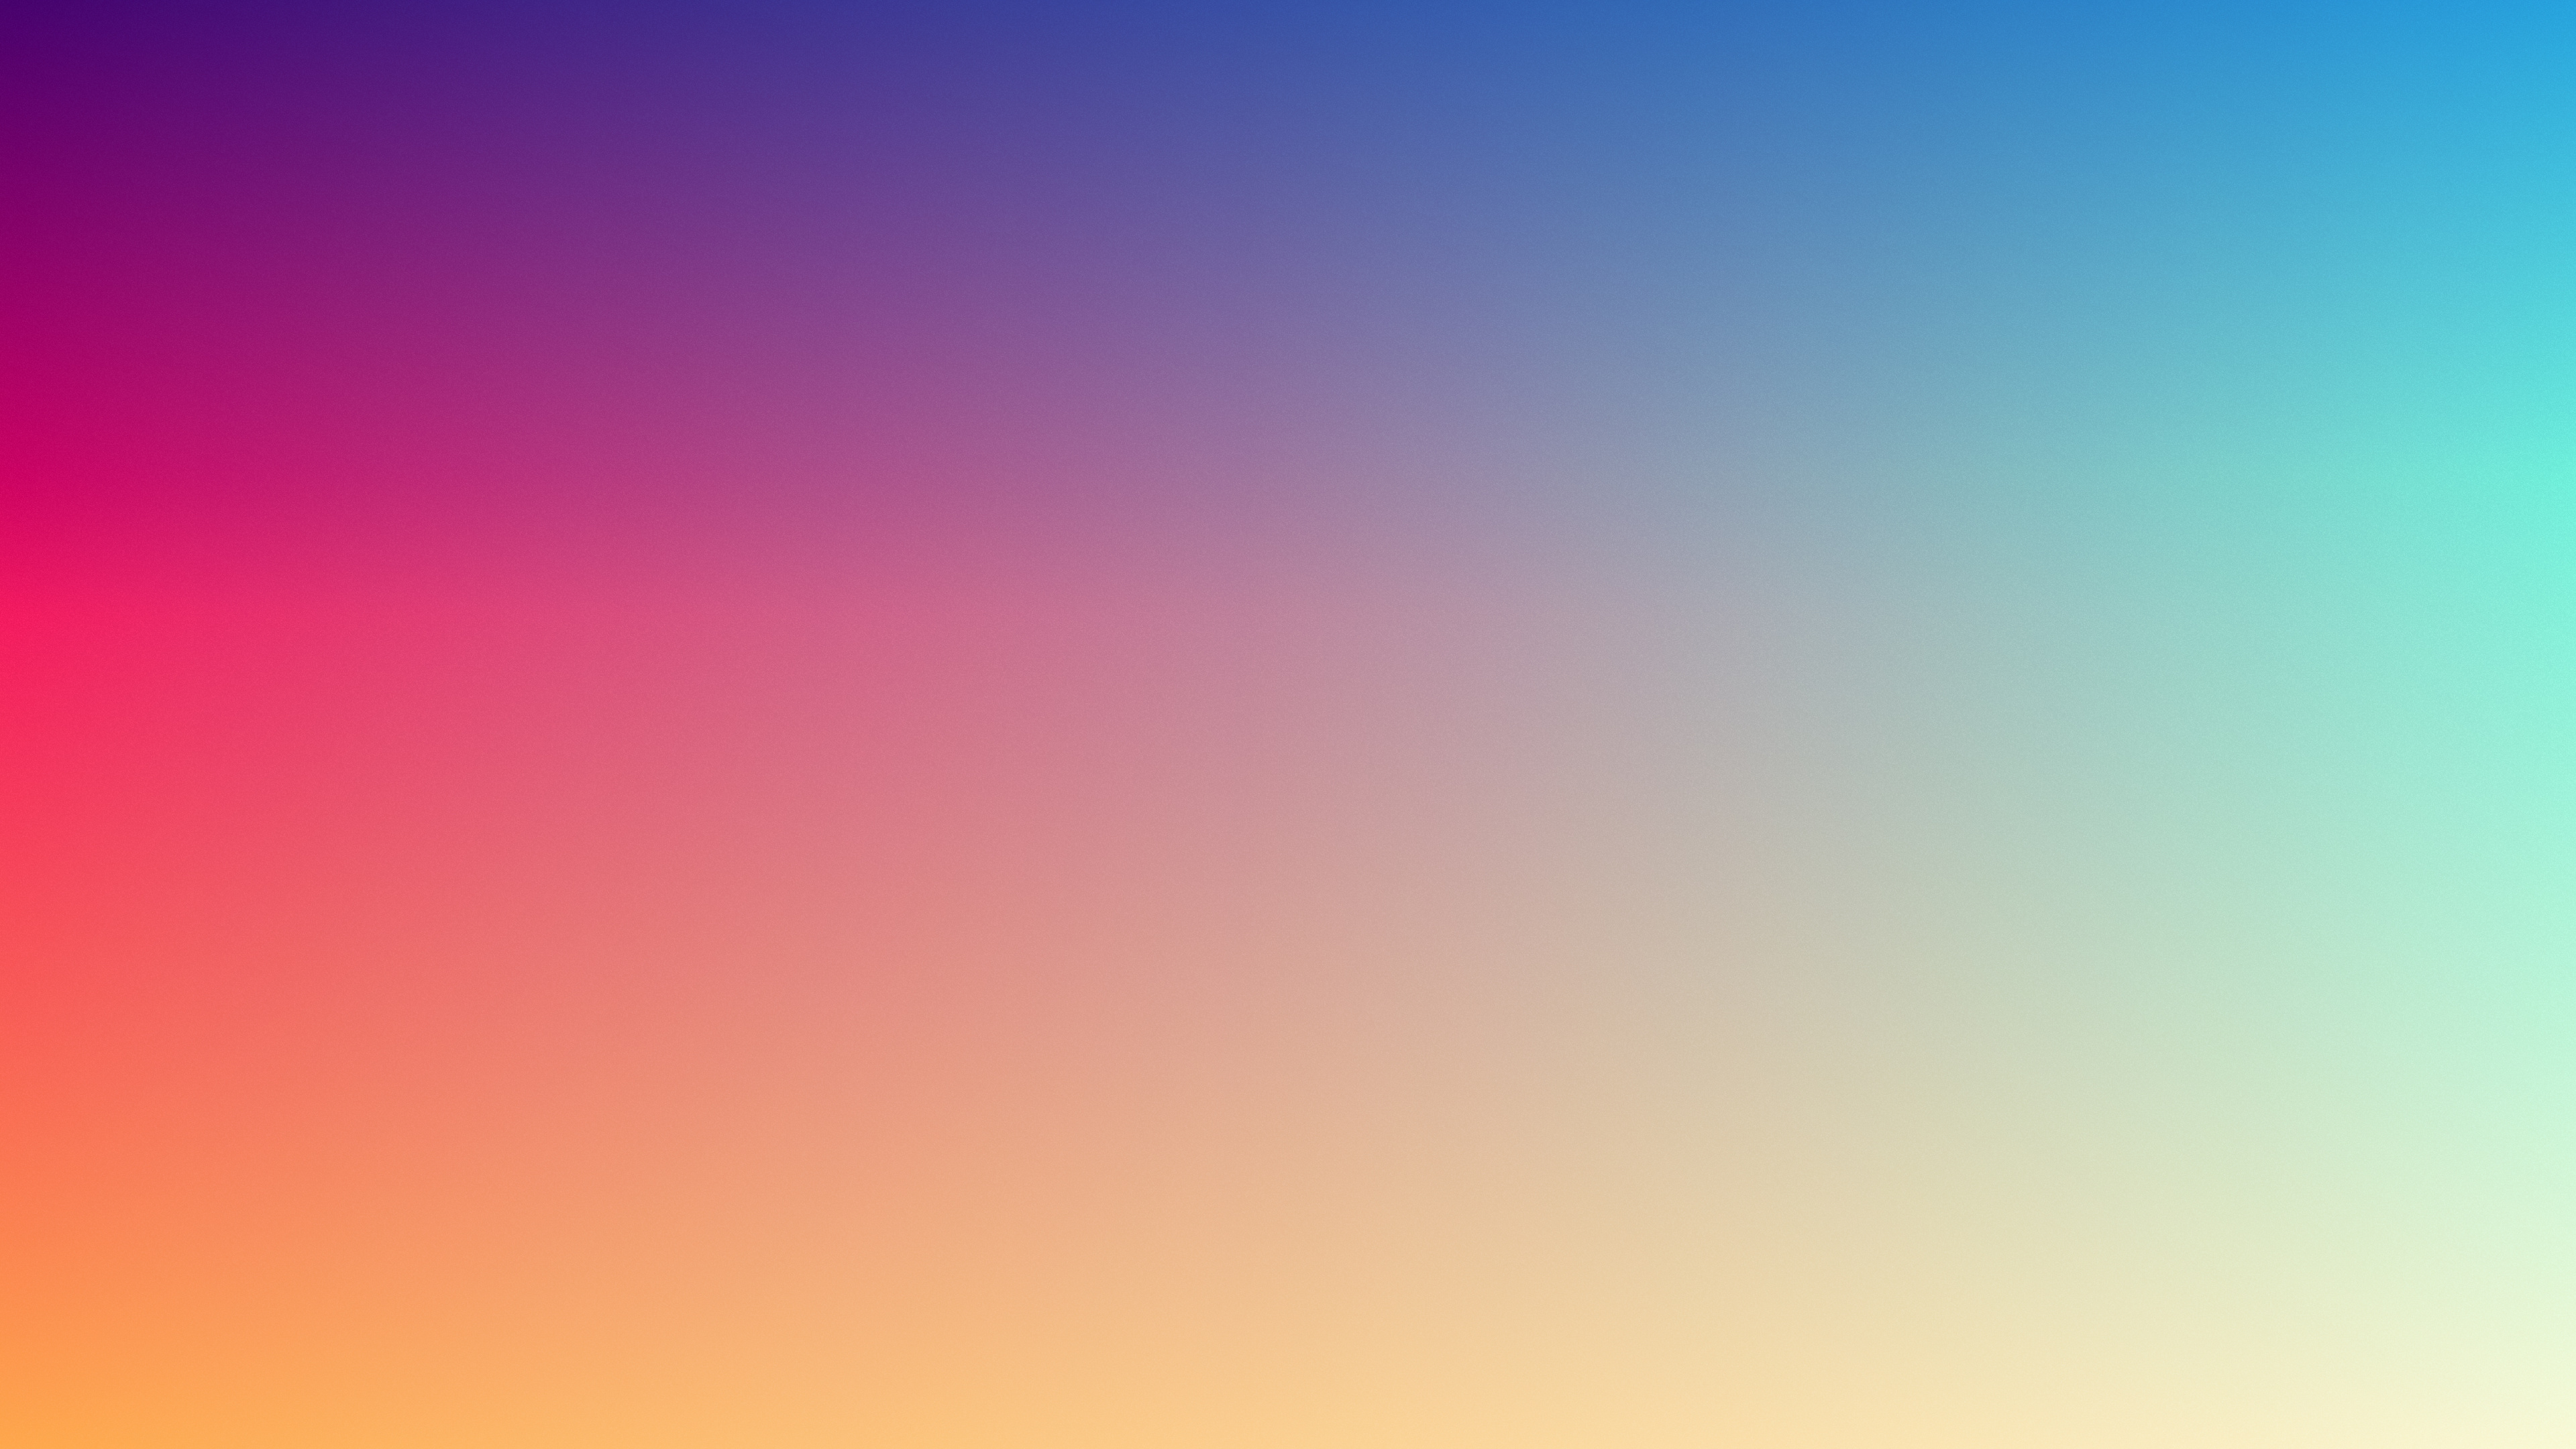 冷静, 气氛, 彩虹, 颜色, 粉红色 壁纸 3840x2160 允许